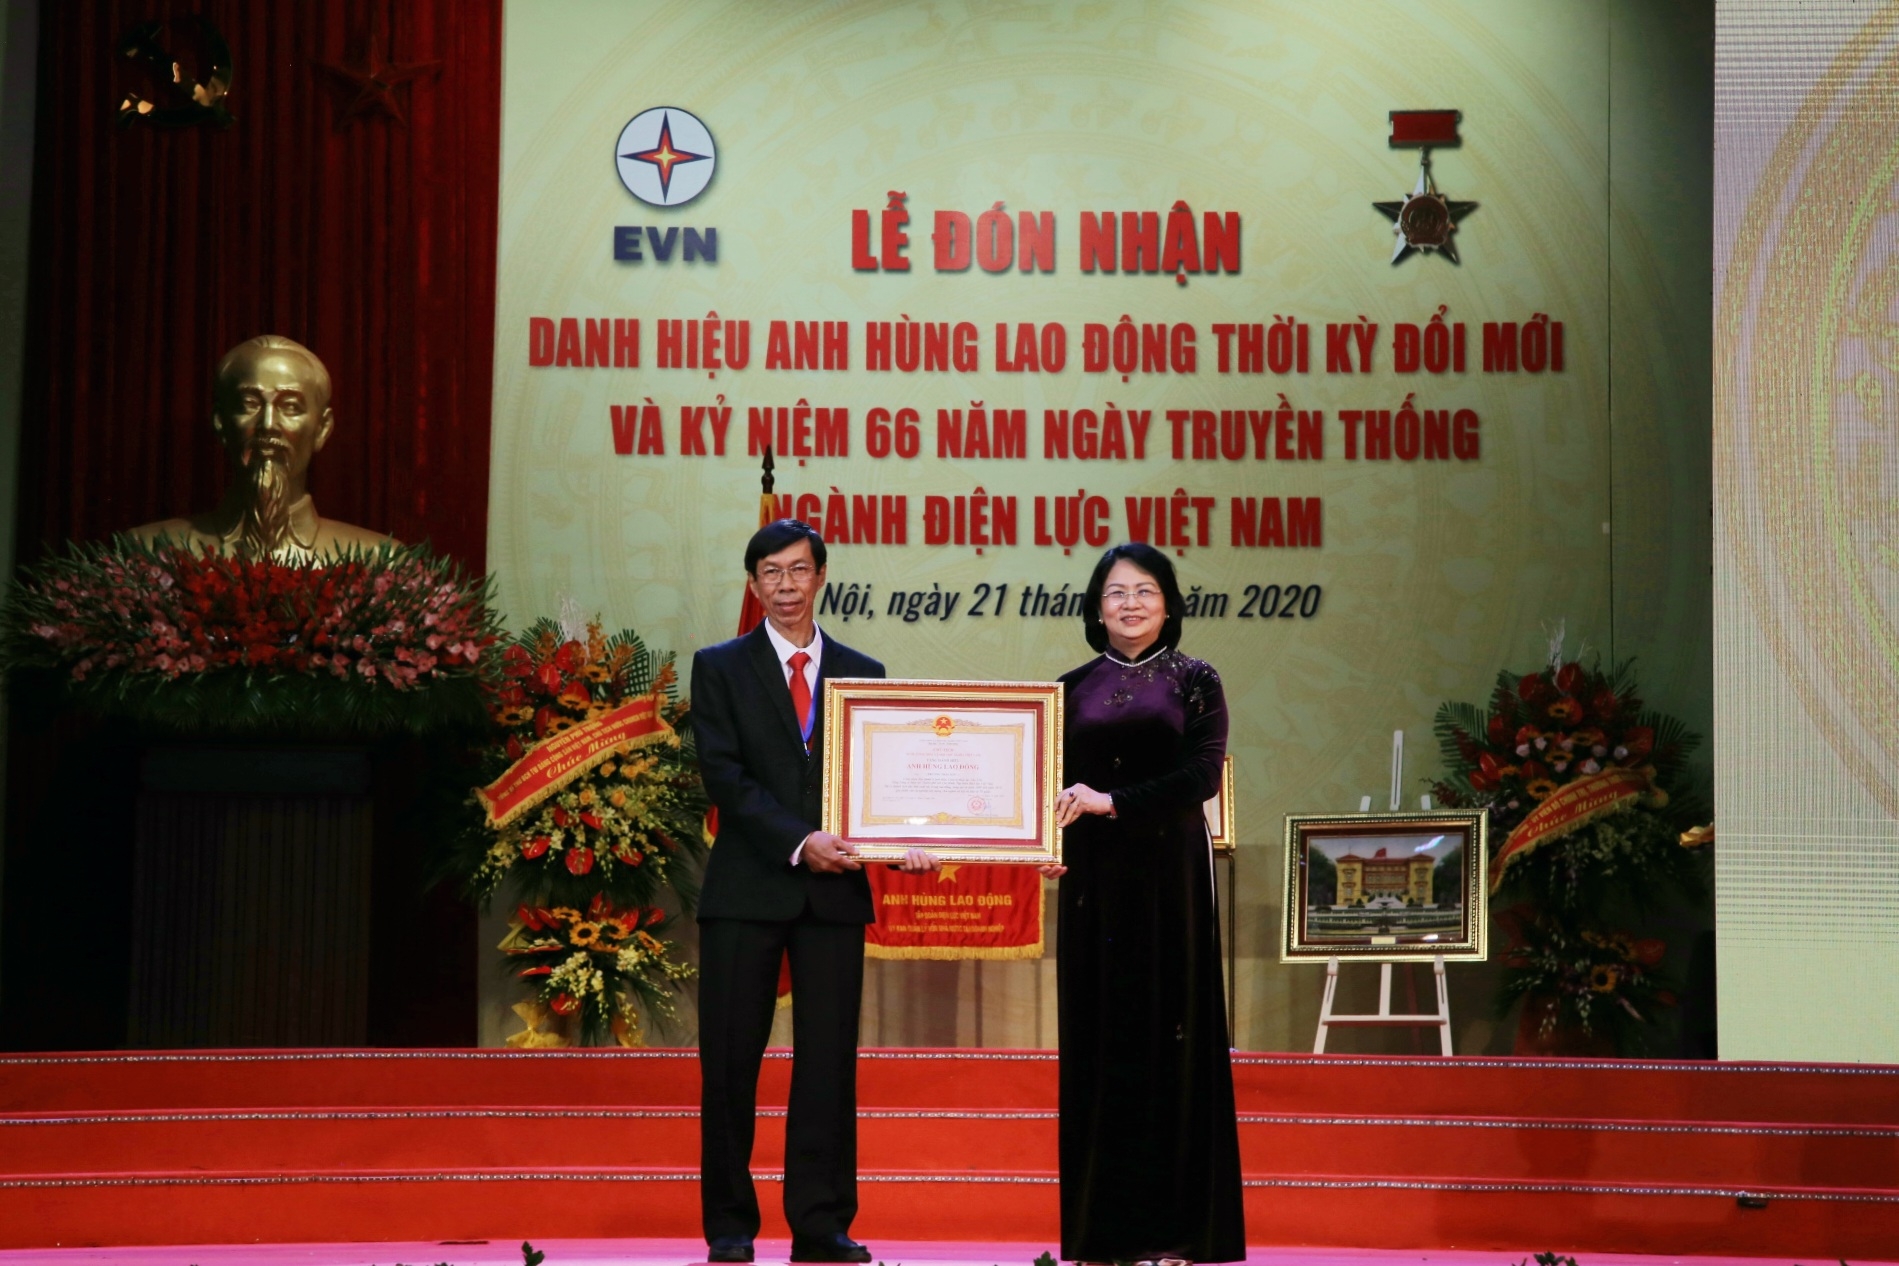 Tập đoàn Điện lực Việt Nam nhận danh hiệu Anh hùng Lao động thời kỳ đổi mới